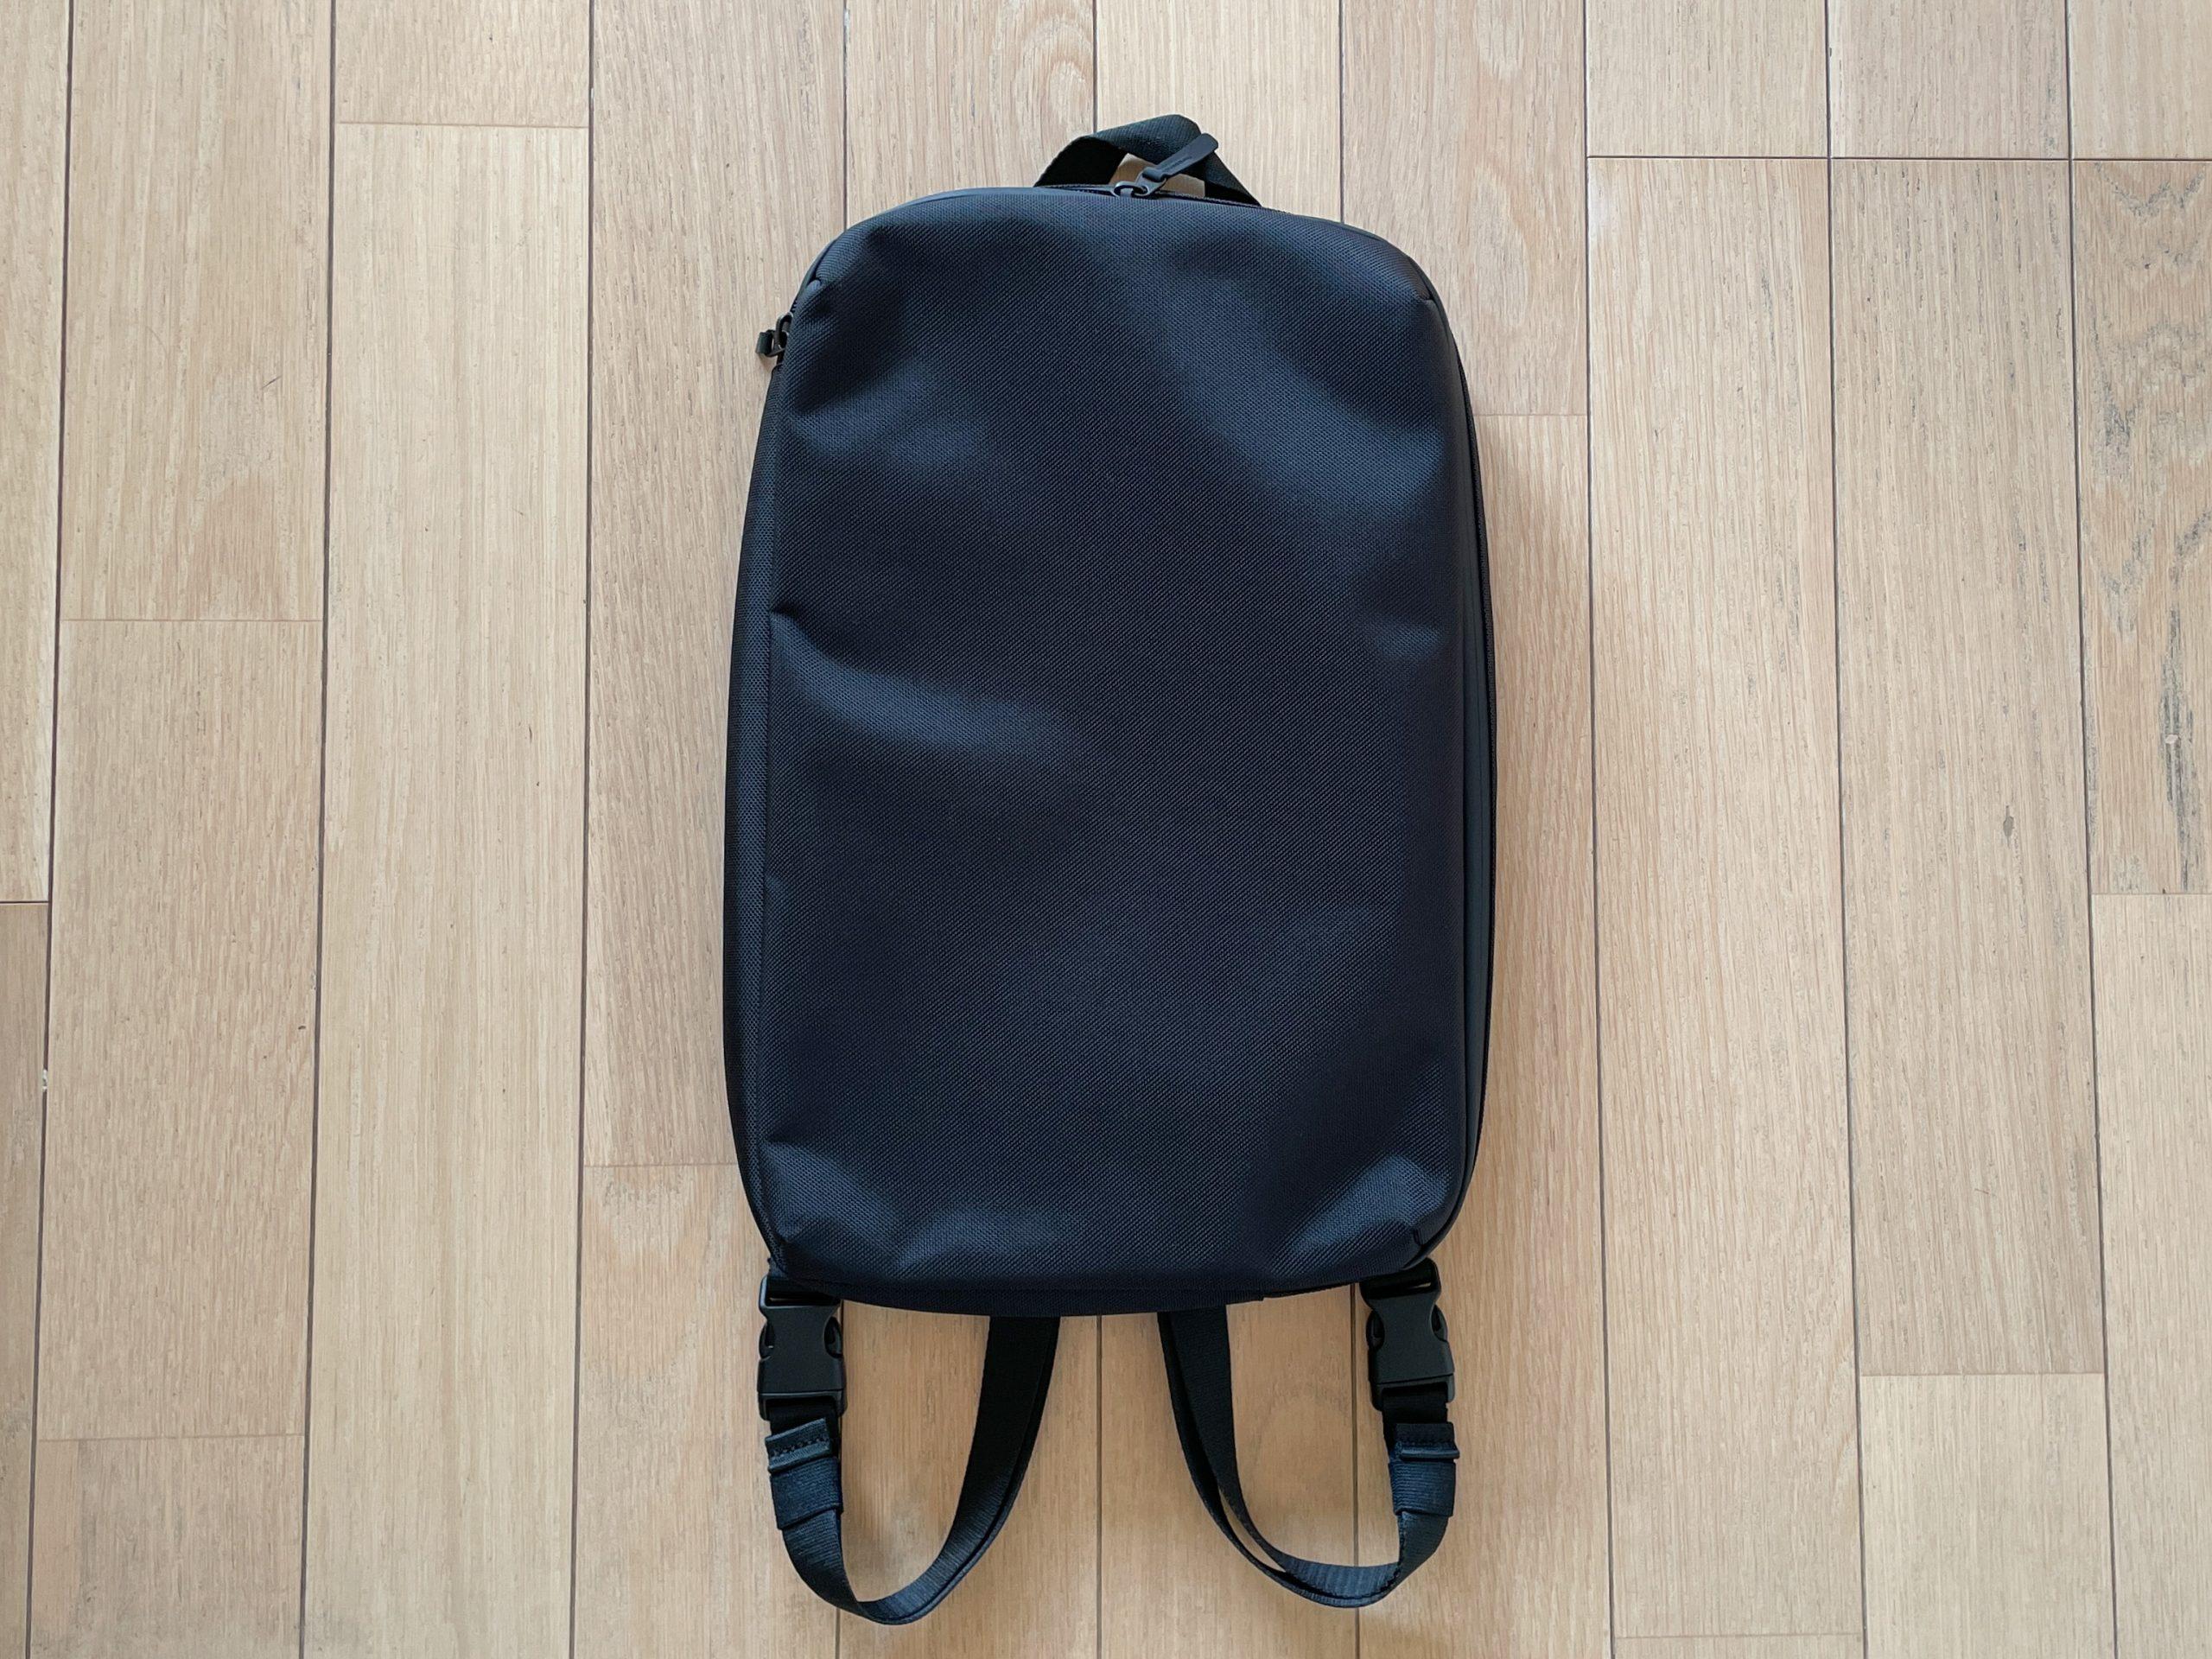 ユニクロの3WAYバッグ、「PCを持ち運びたいけど大きなバッグは